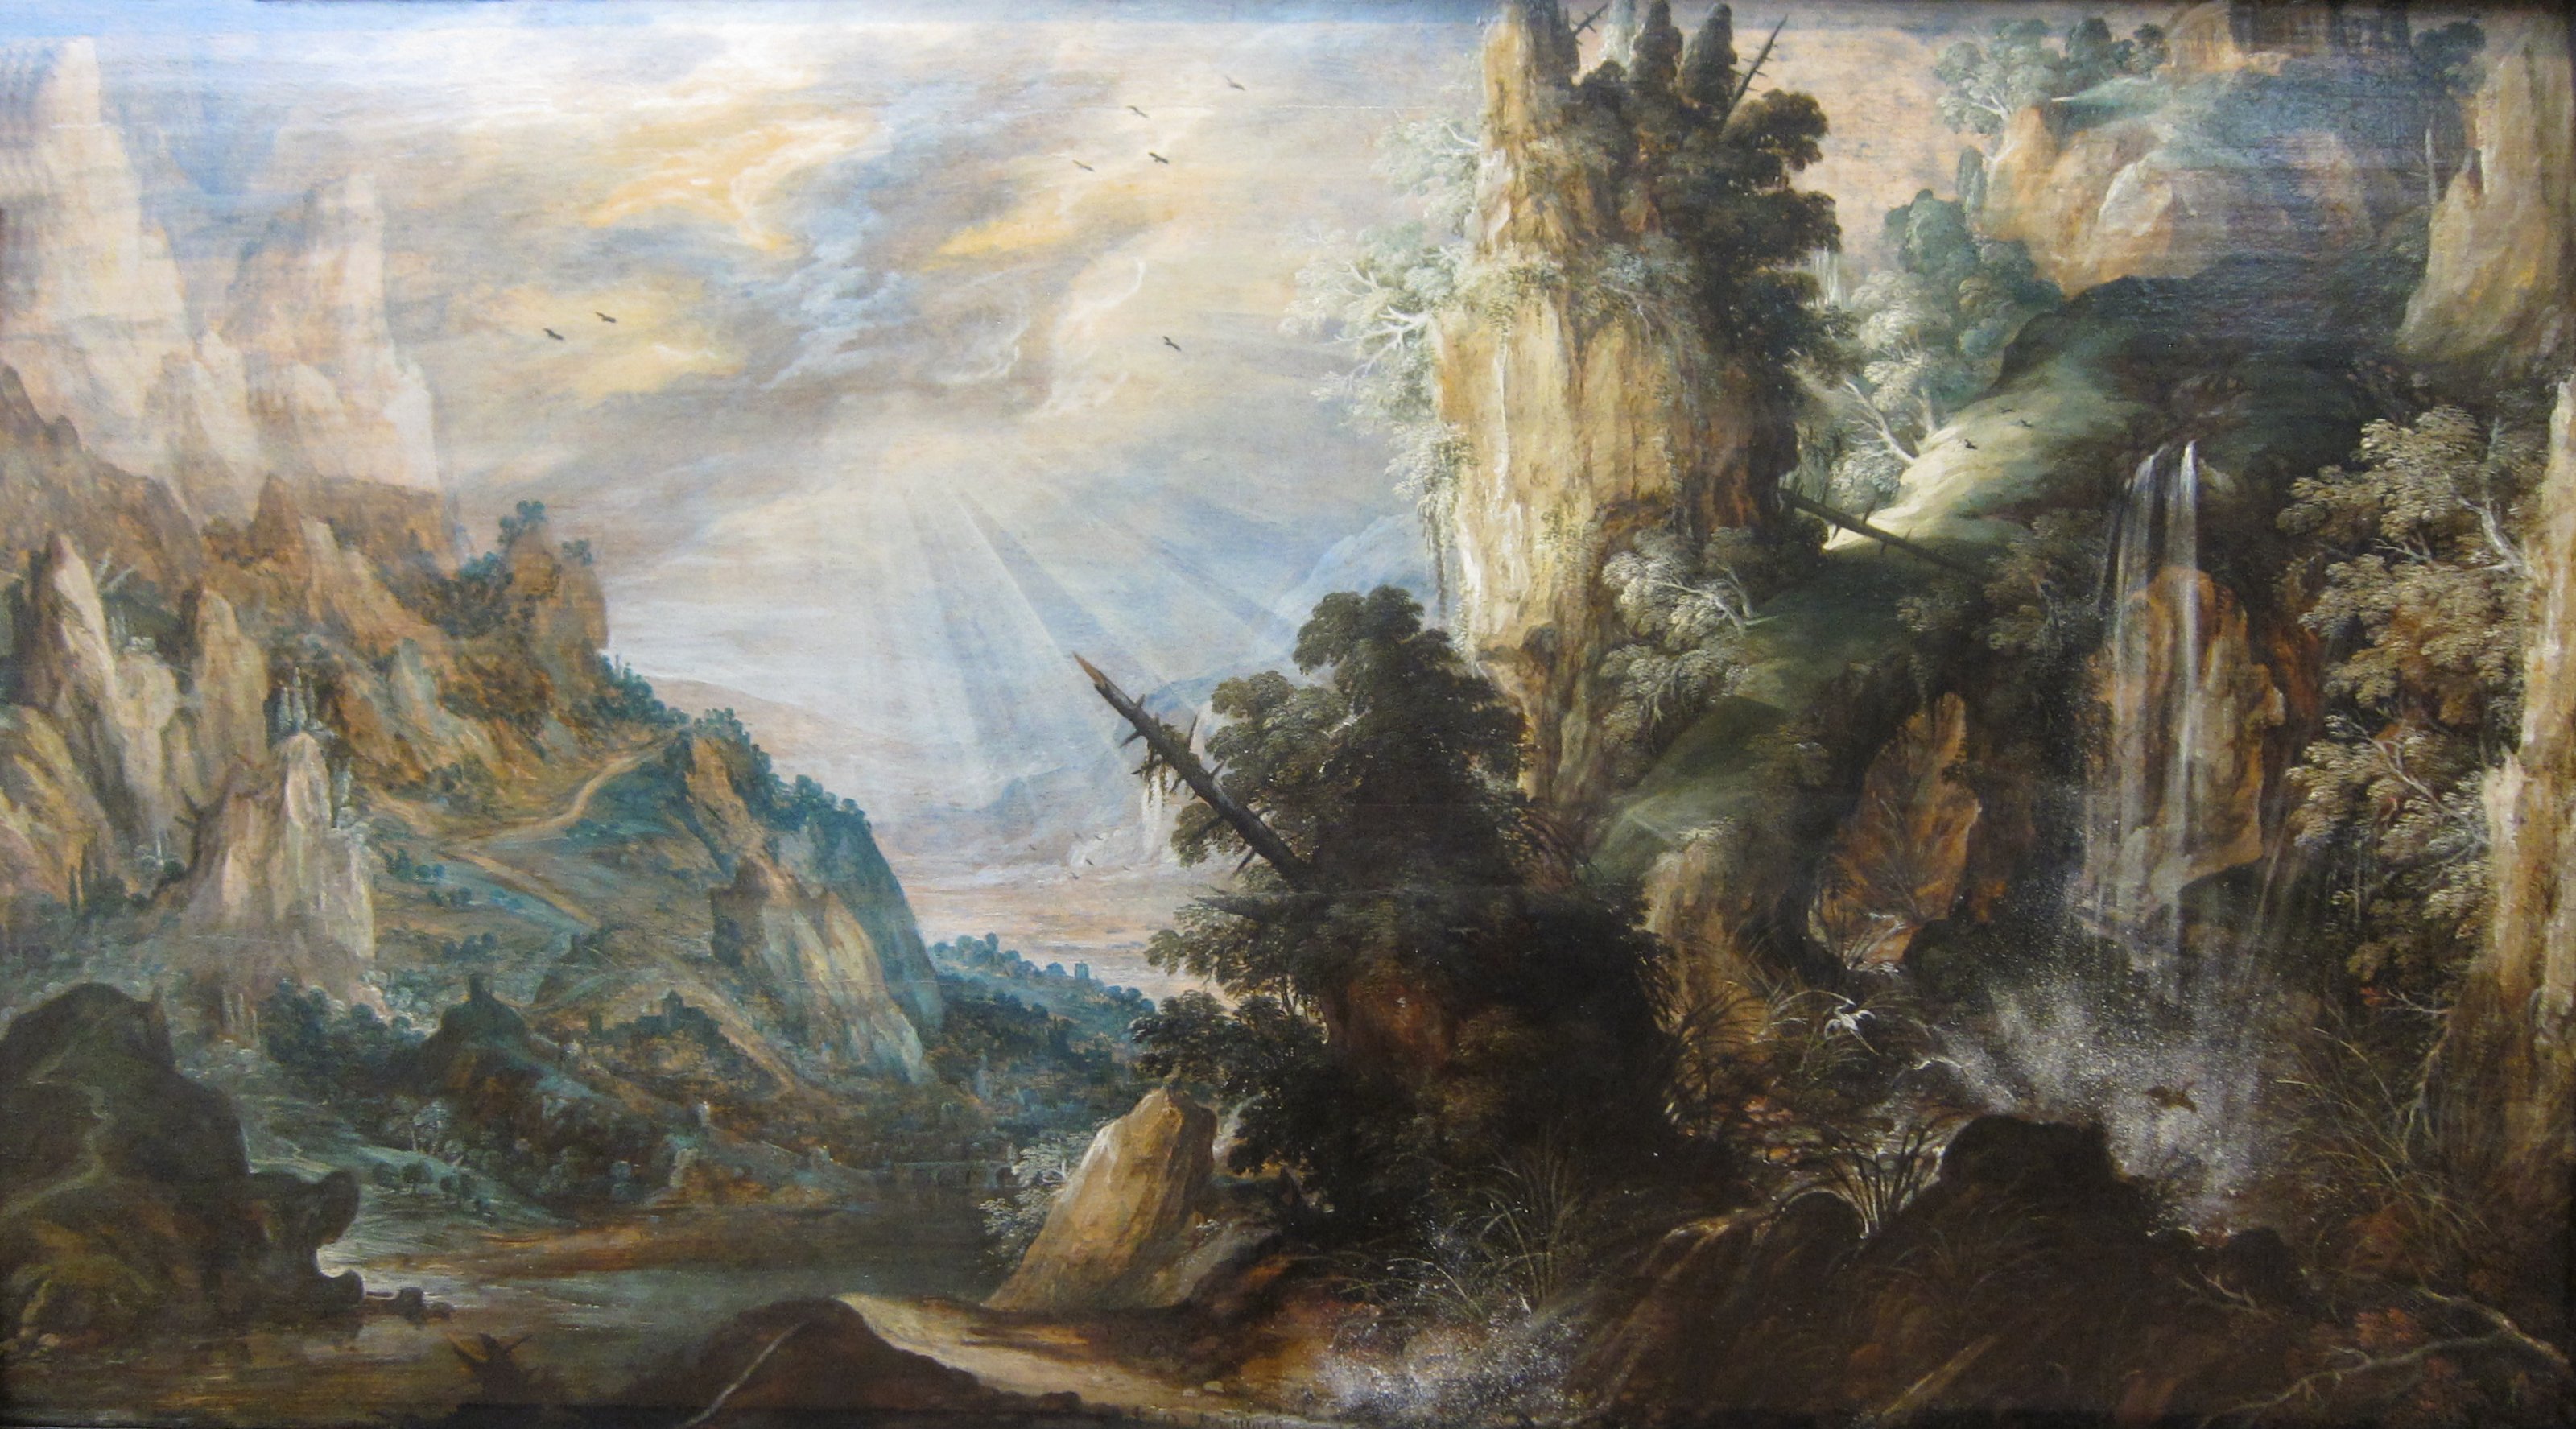 'A Mountainous Landscape with a Waterfall' by Kerstiaen de Keuninck, c. 1600